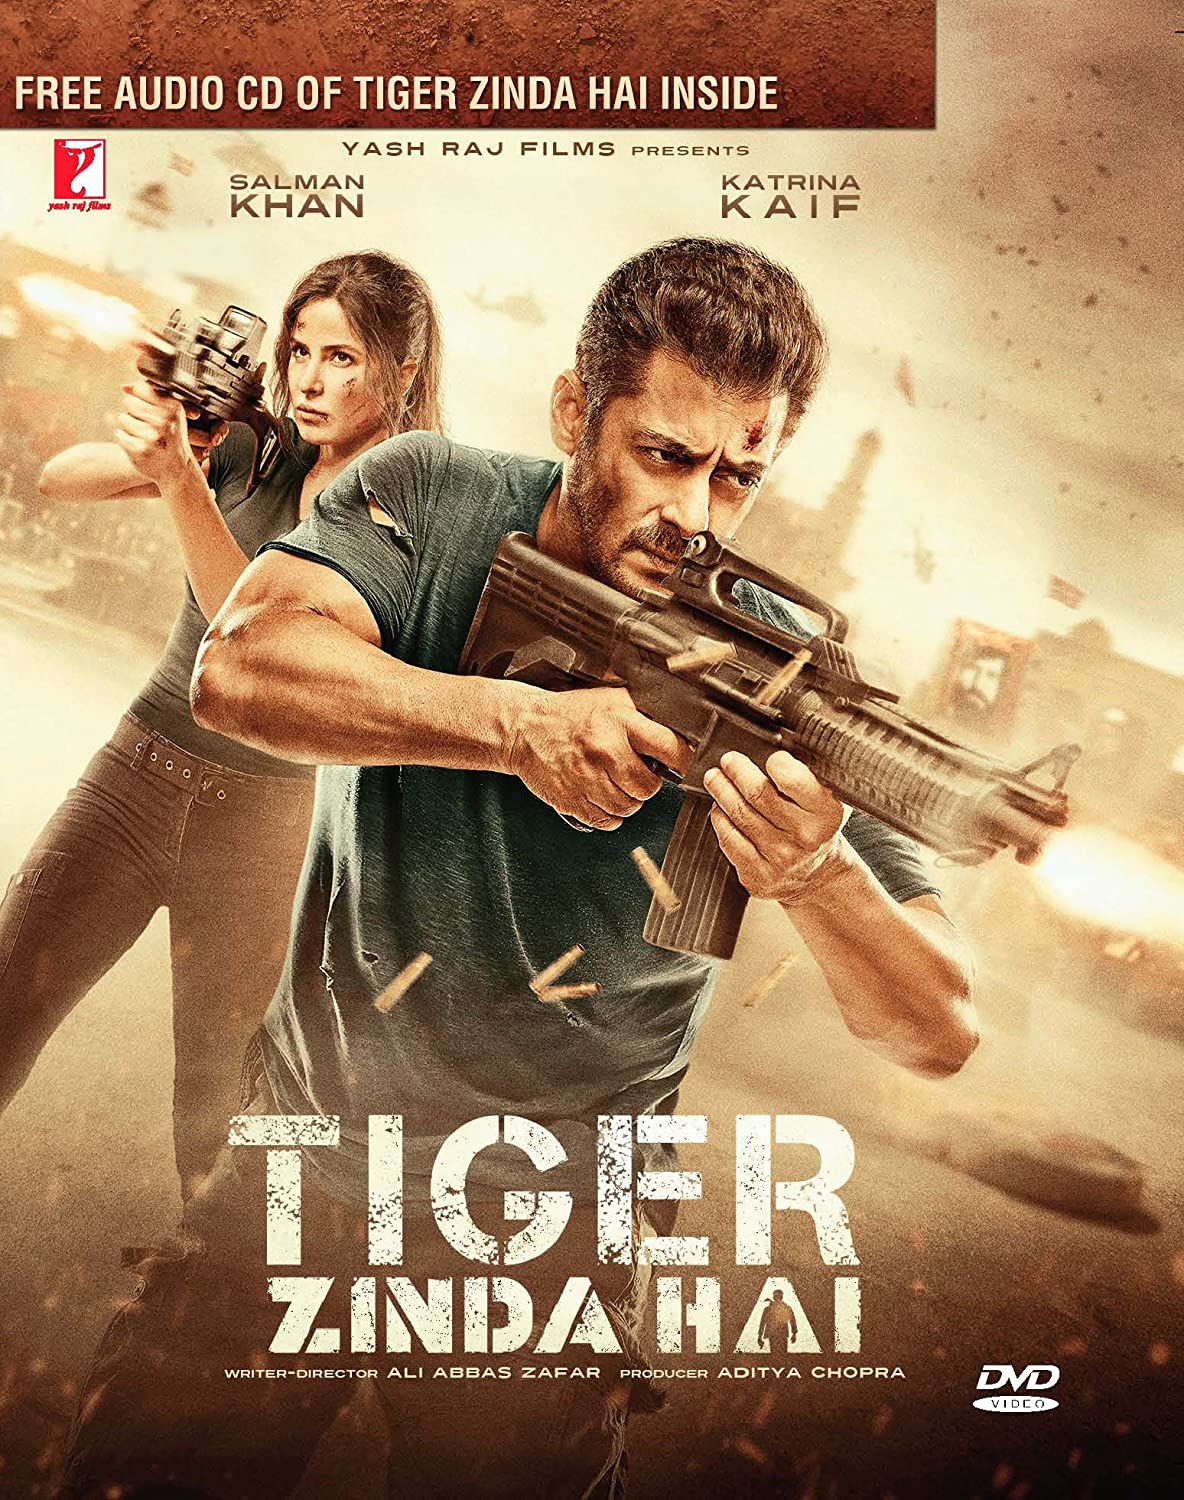 Tiger Zinda Hai 2017 808 Poster.jpg